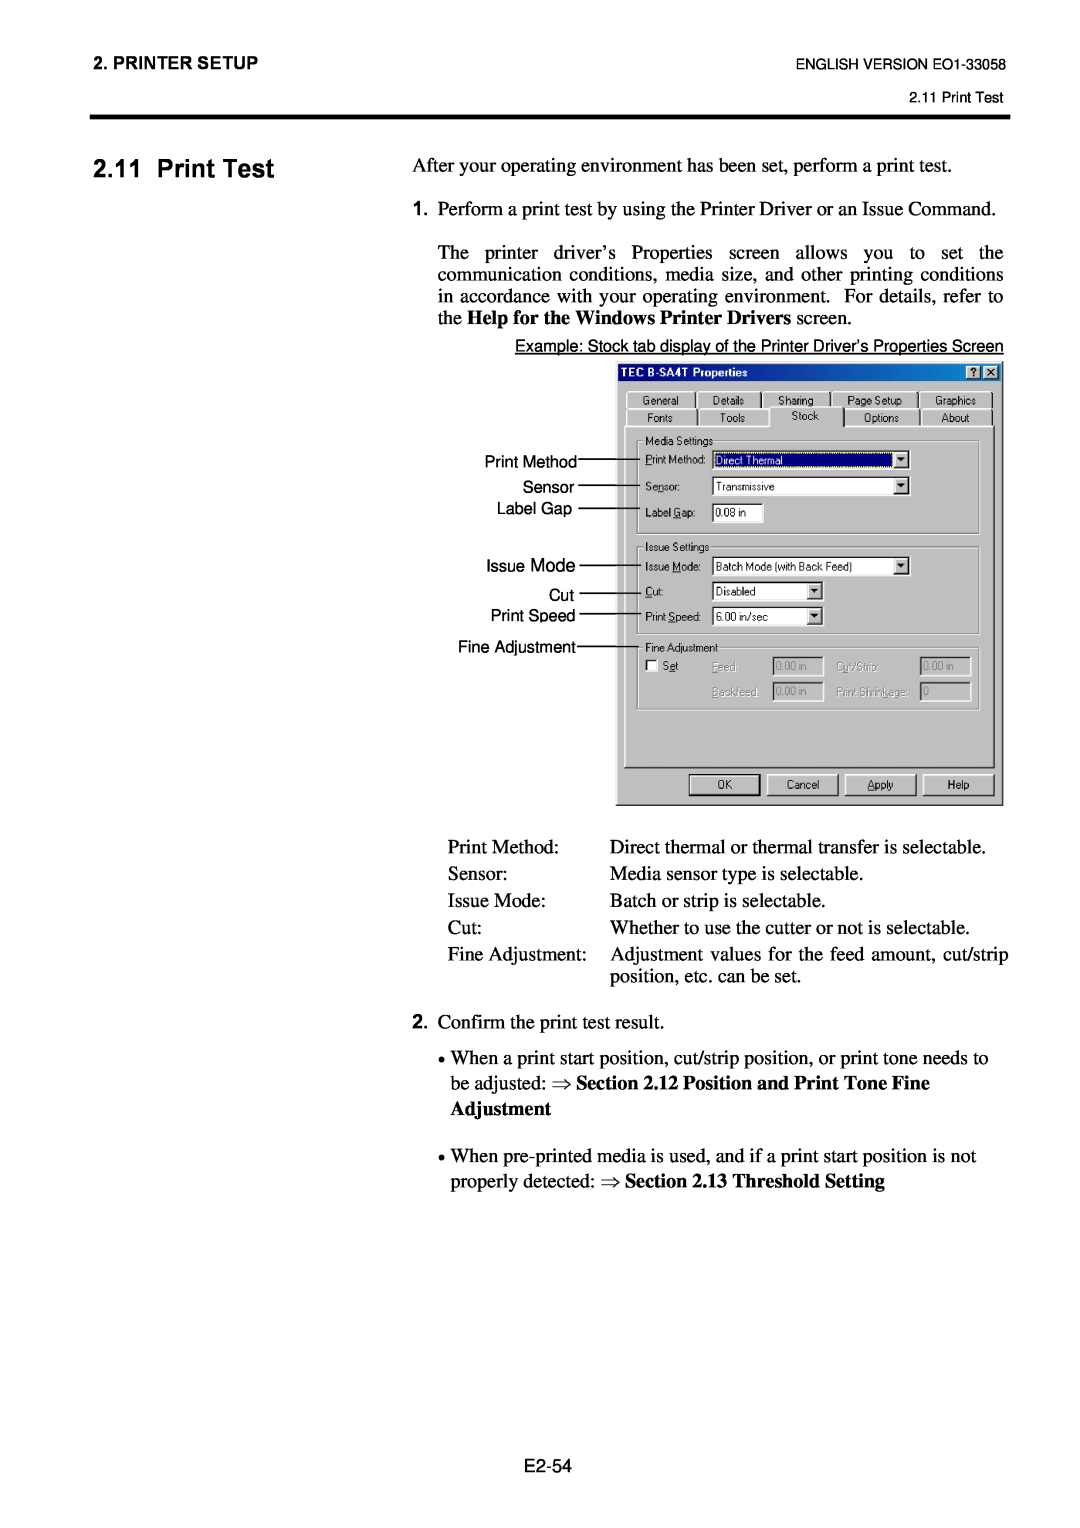 Toshiba B-SX4T owner manual Print Test, Adjustment 